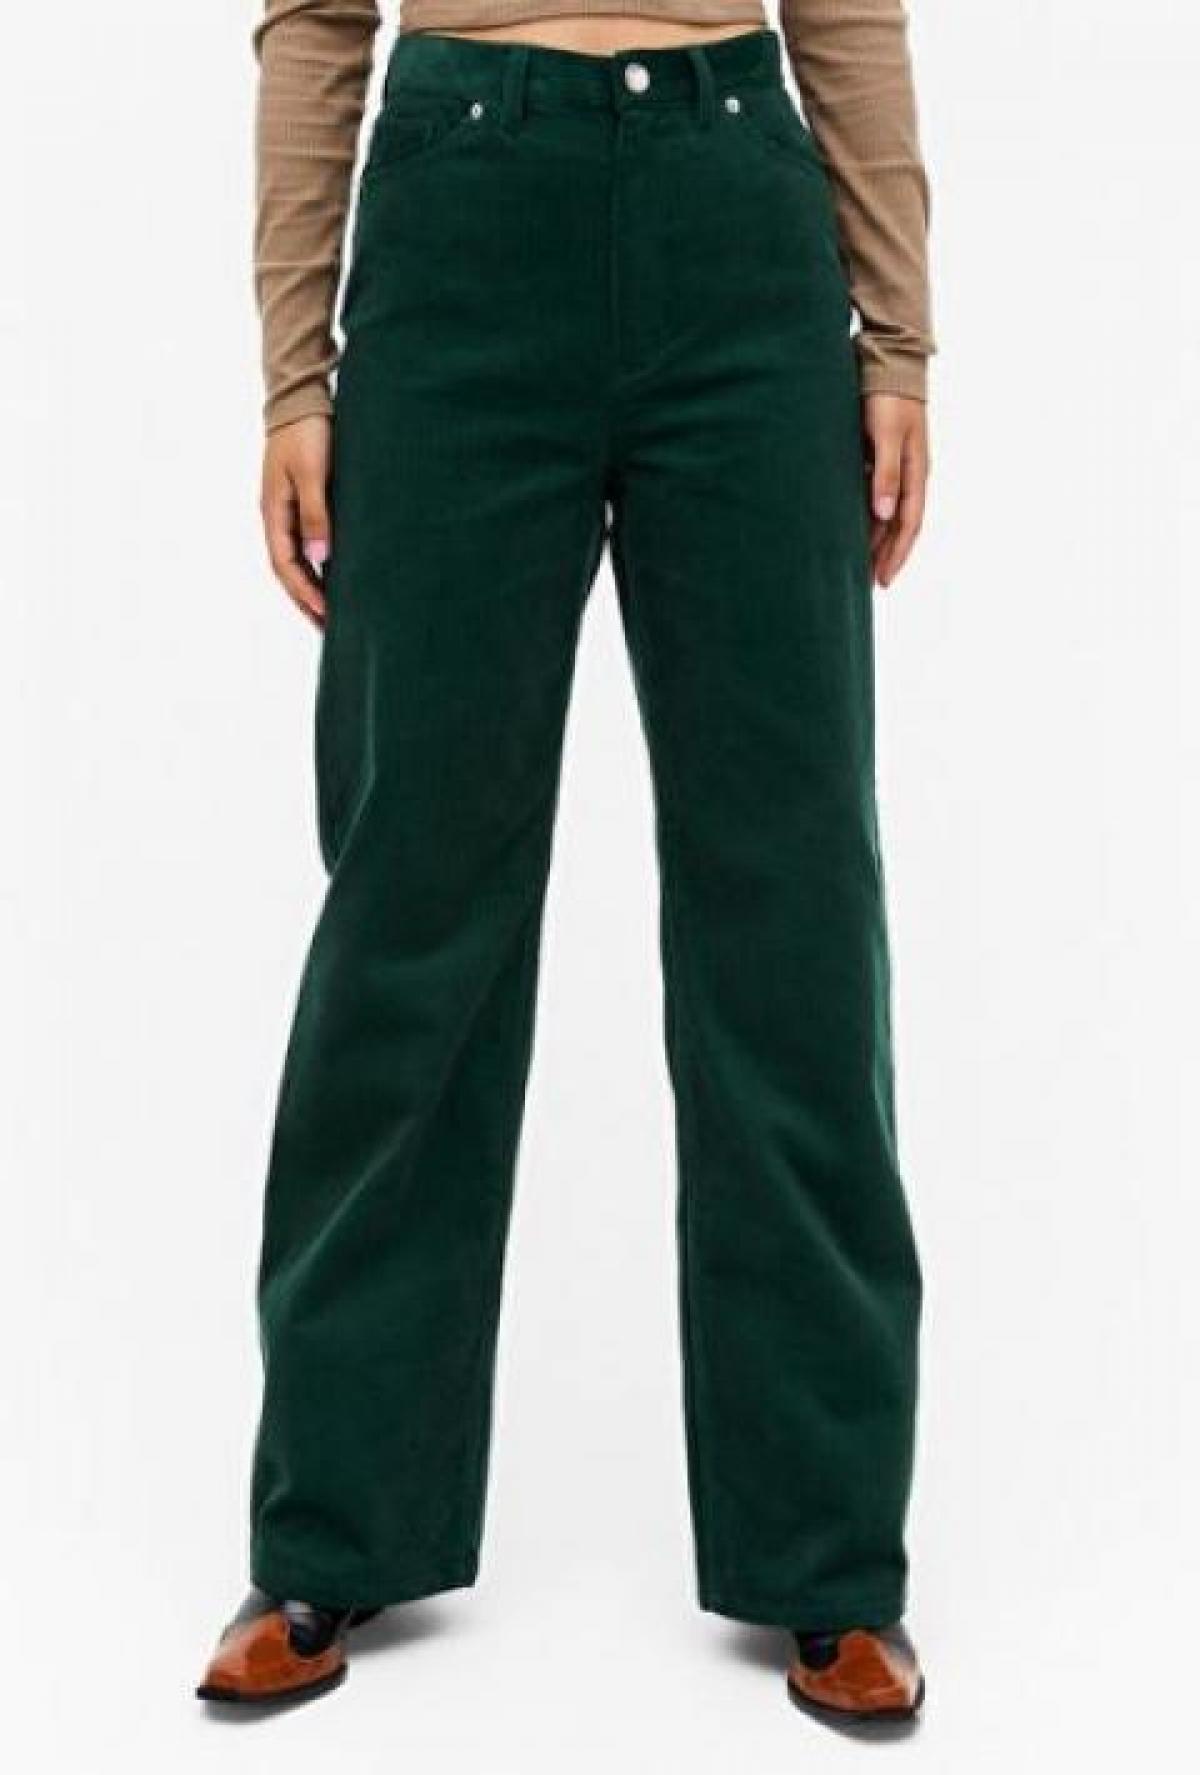 Le pantalon vert en velours